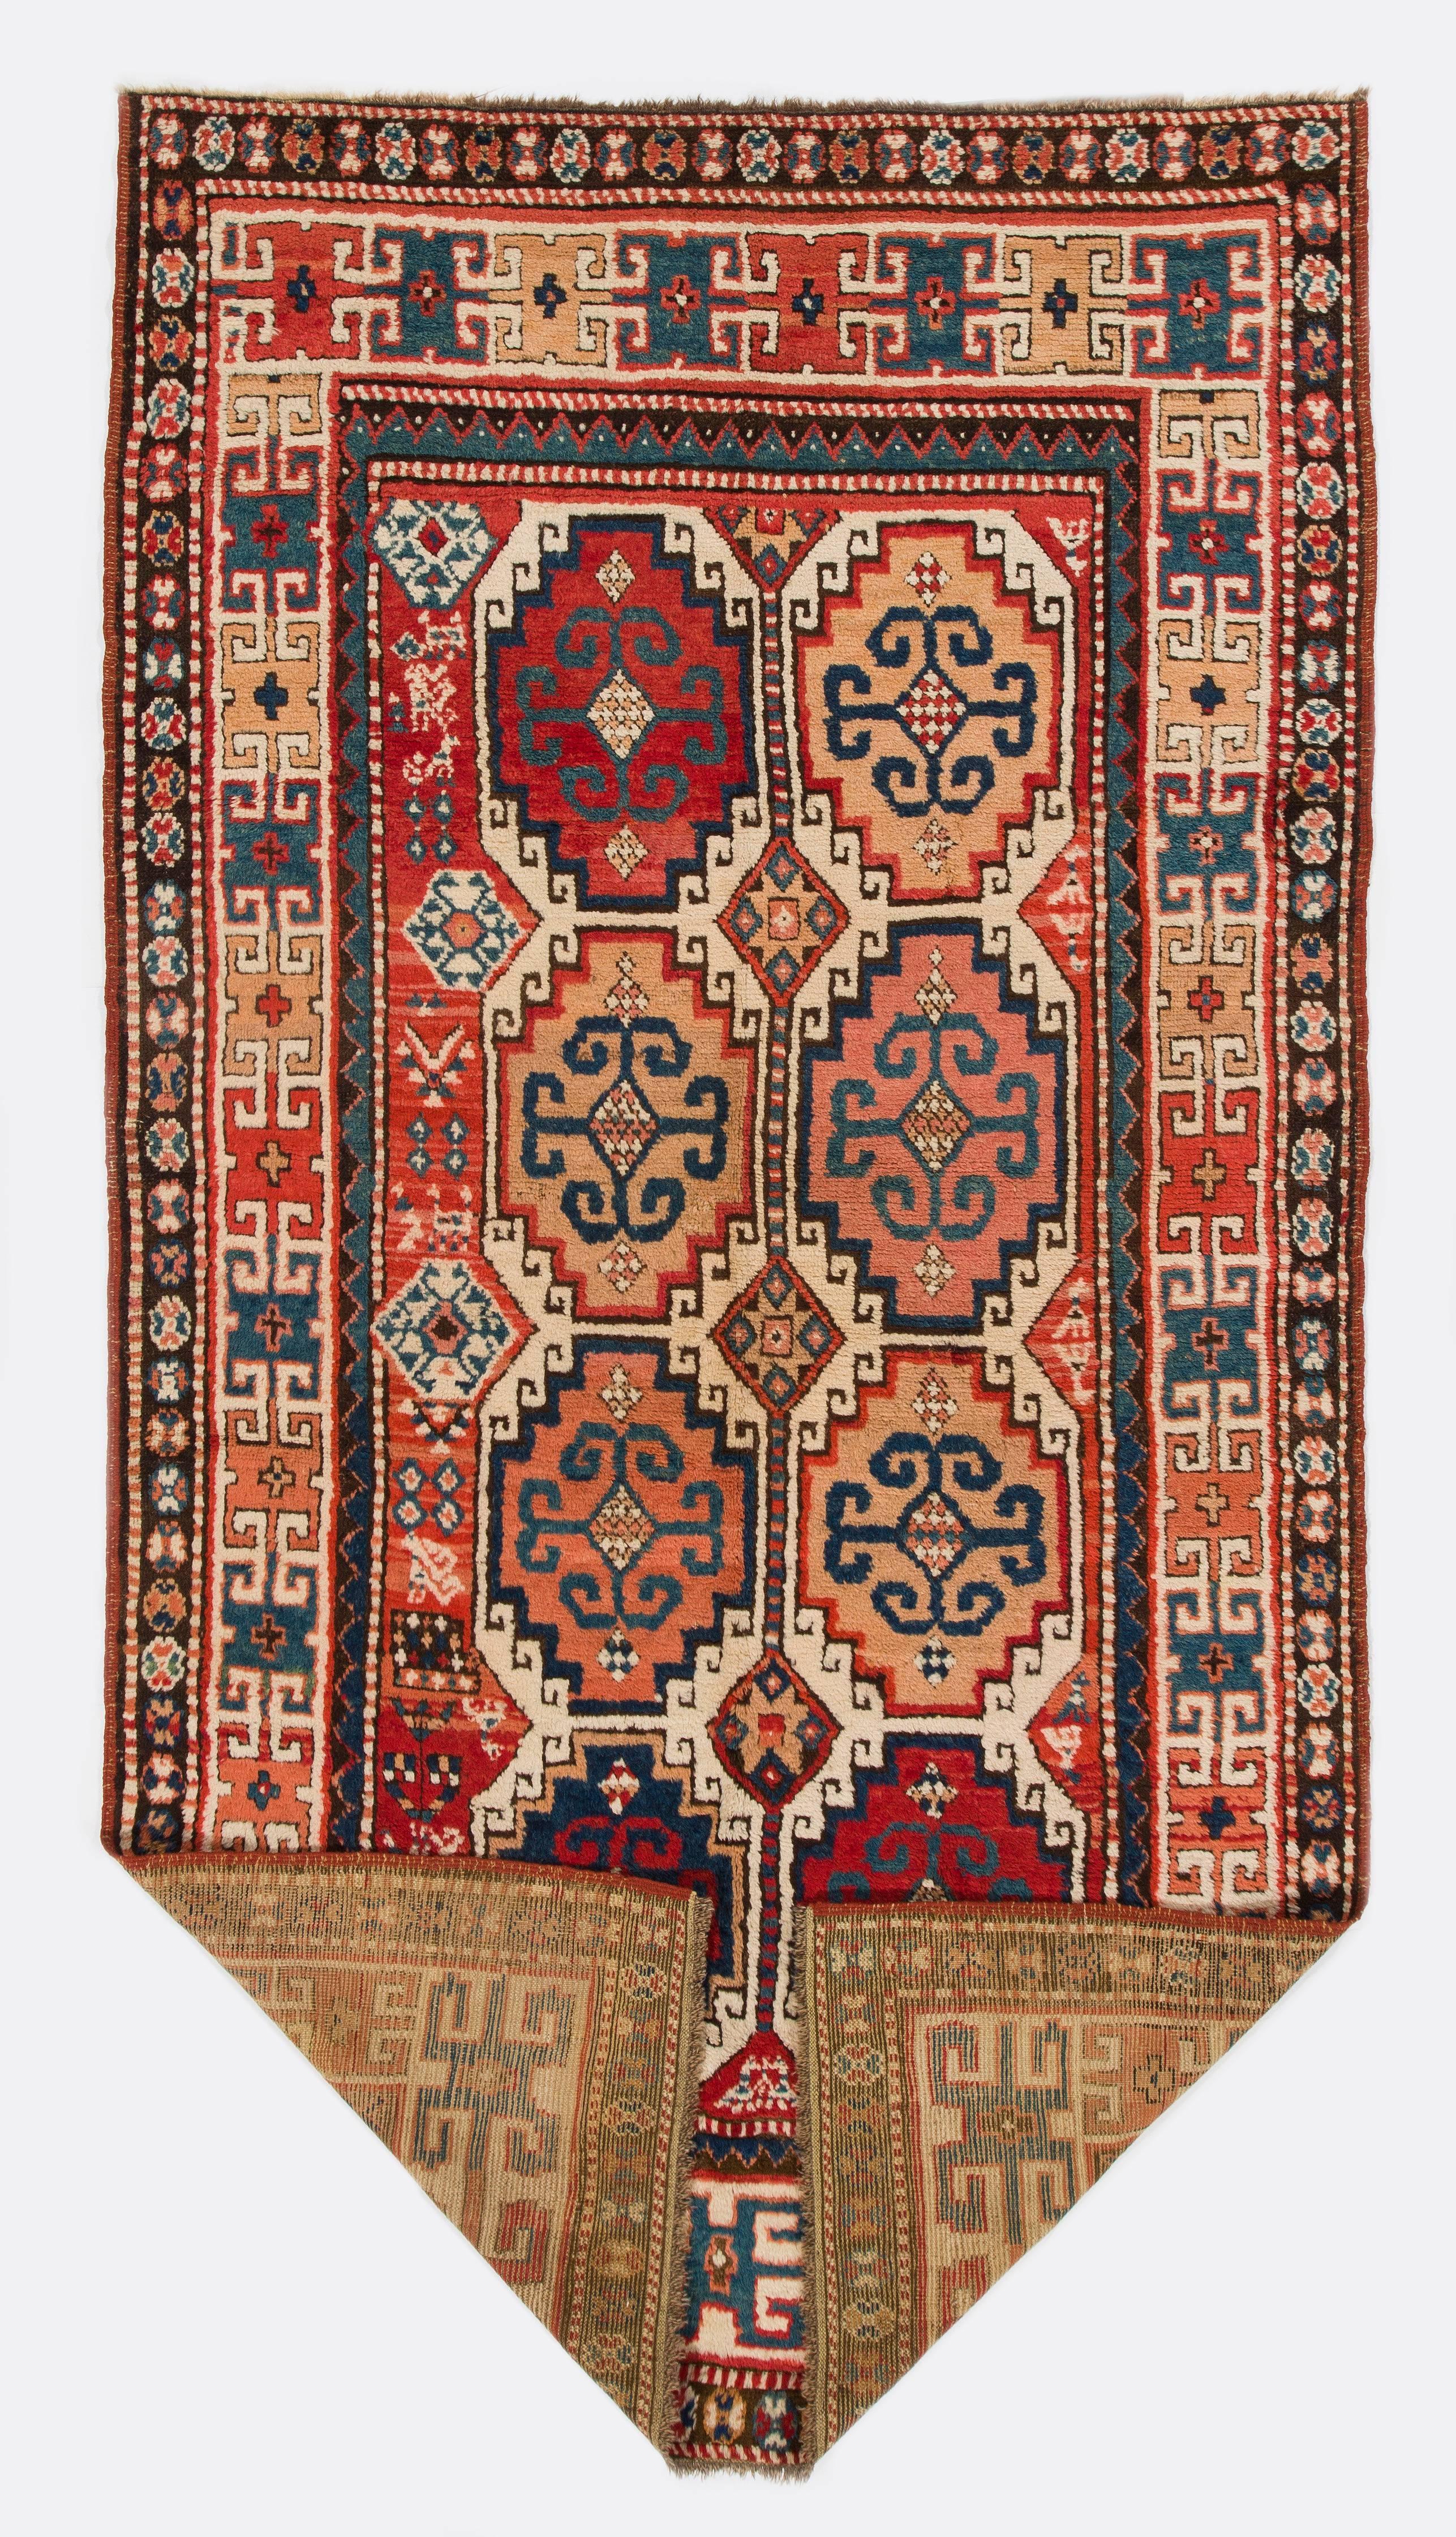 Ancien tapis caucasien Moghan Kazak, vers 1870. Finement noué à la main avec un poil de laine moyen et régulier sur une base de laine. Très bon état. Robustes et aussi propres qu'un tapis neuf (lavés en profondeur par des professionnels). 
Taille :